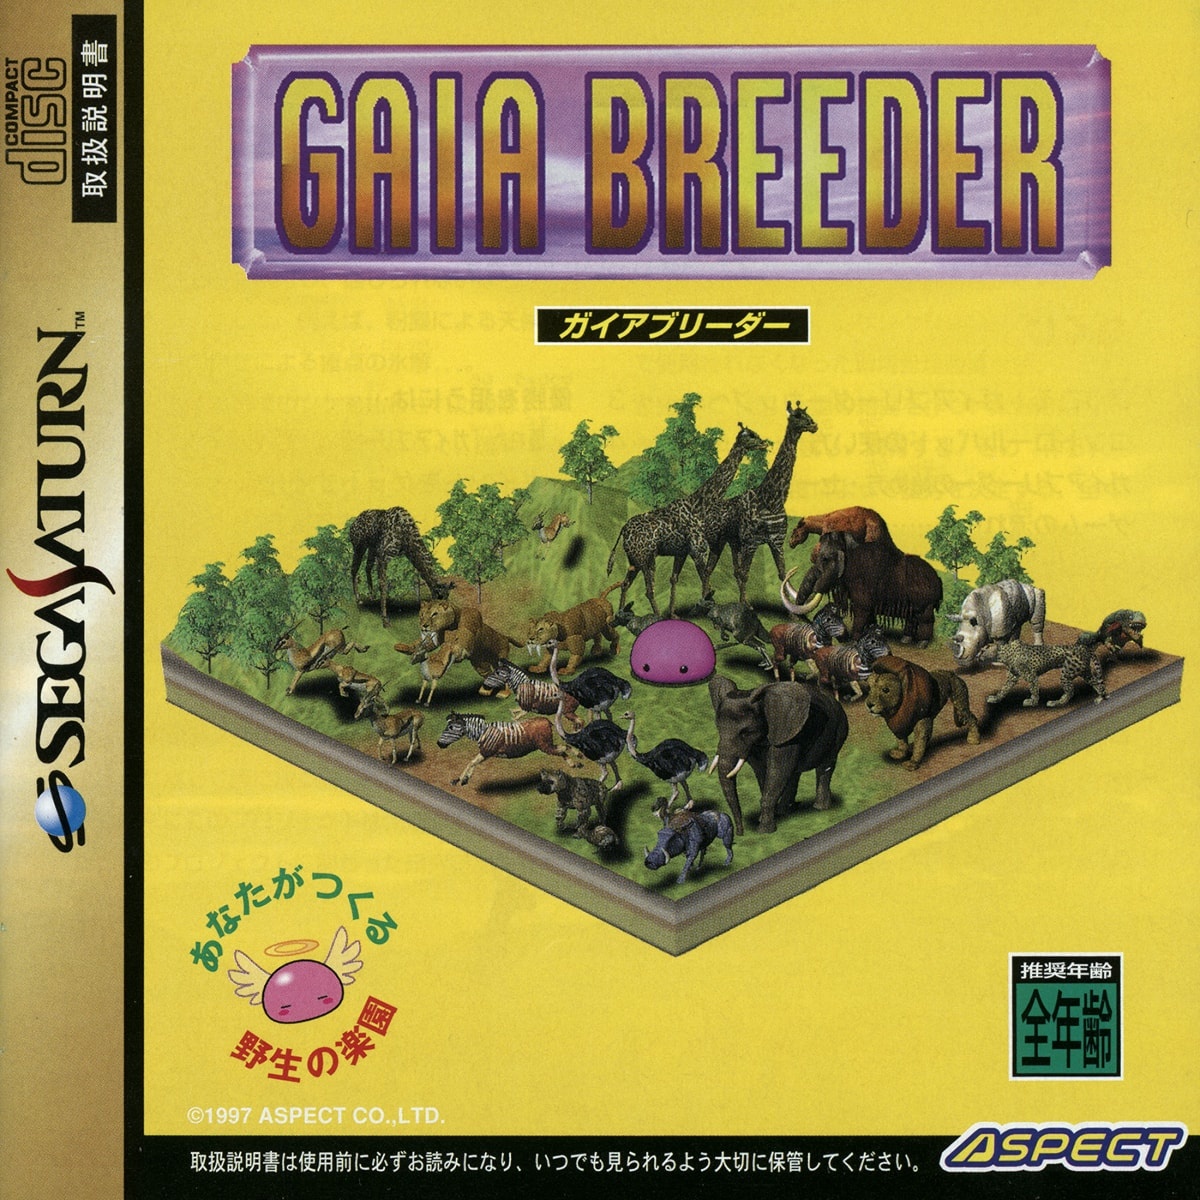 Capa do jogo Gaia Breeder